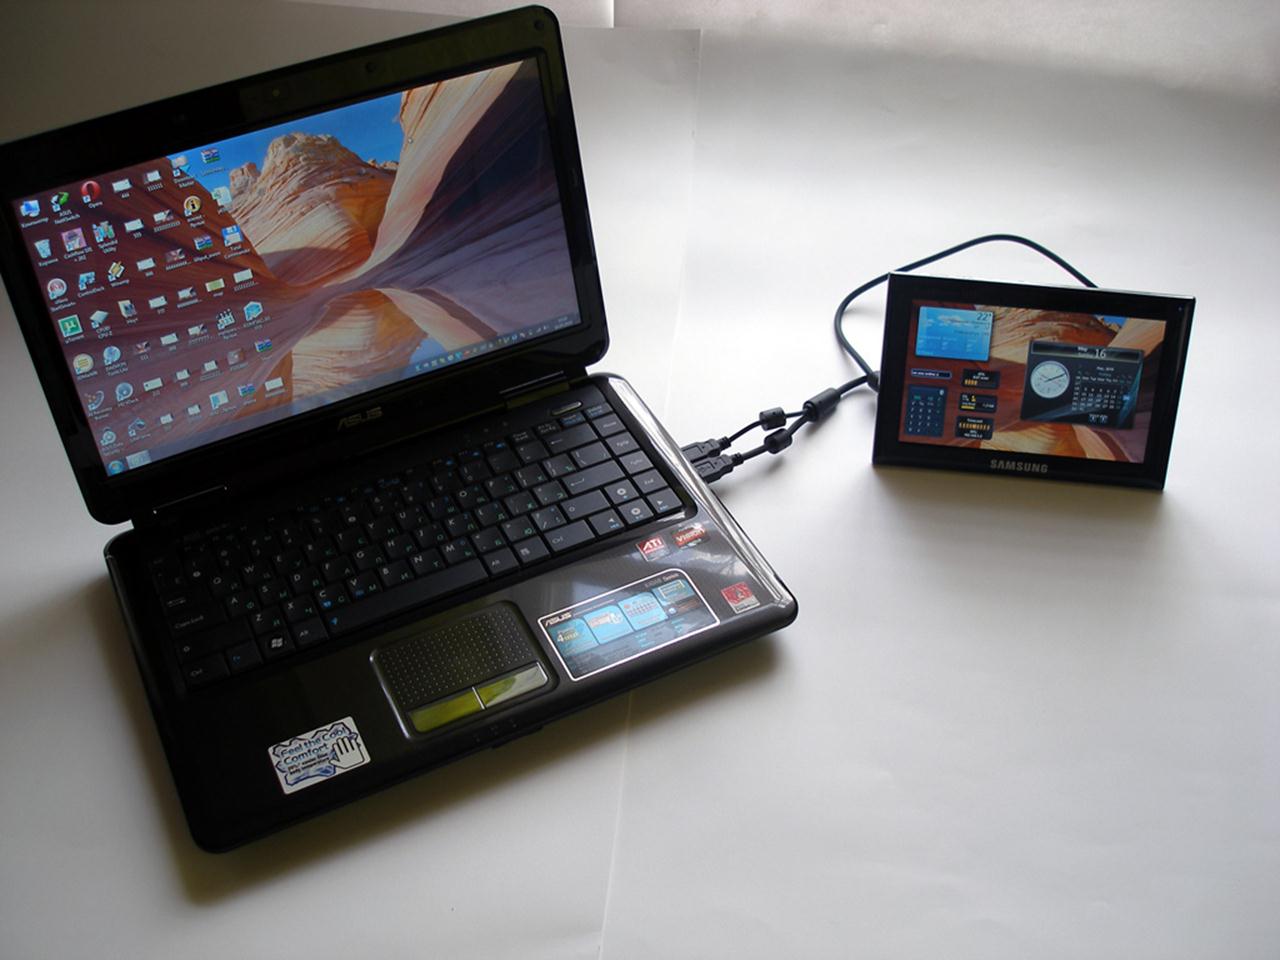 Η φόρτιση μέσω USB απαιτεί περισσότερα   πολύ καιρό   από όταν συνδέετε το tablet στην πρίζα